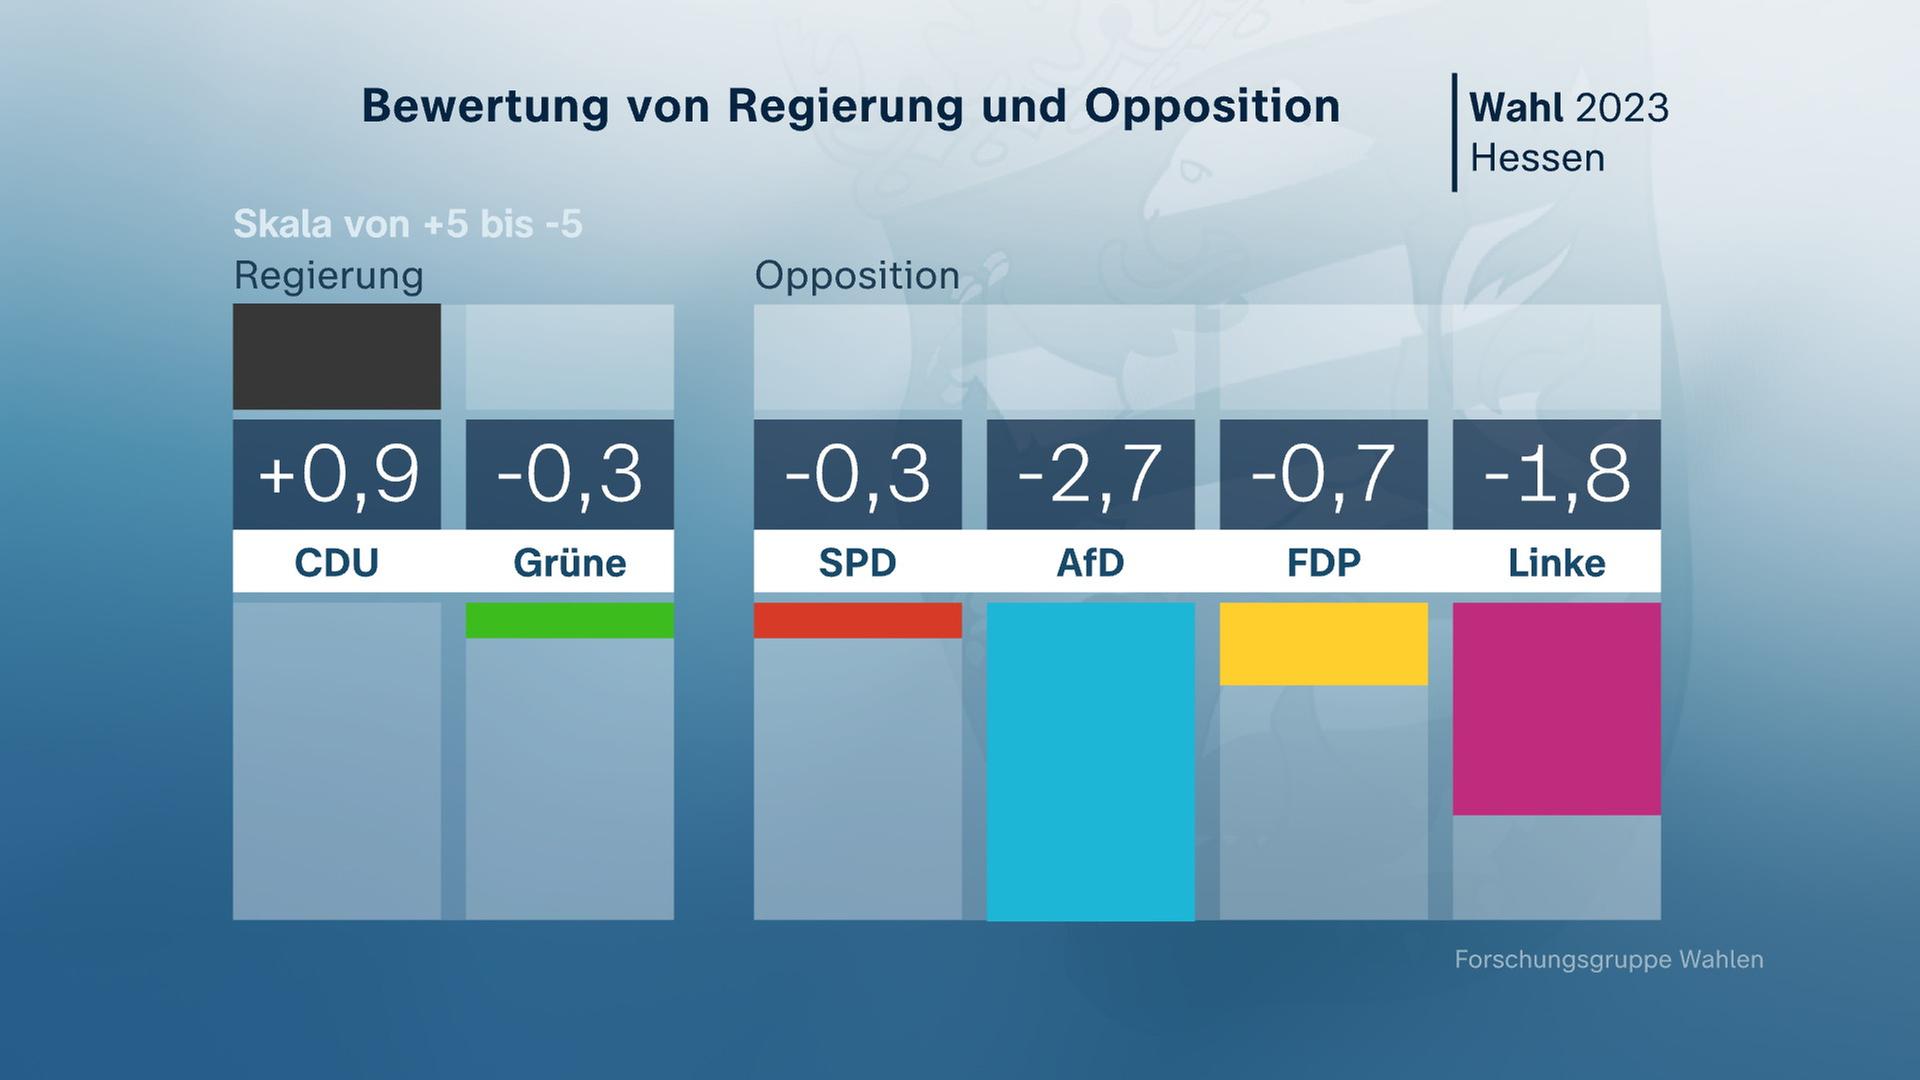 Landtagswahl Hessen, Bewertung von Regierung und Opposition